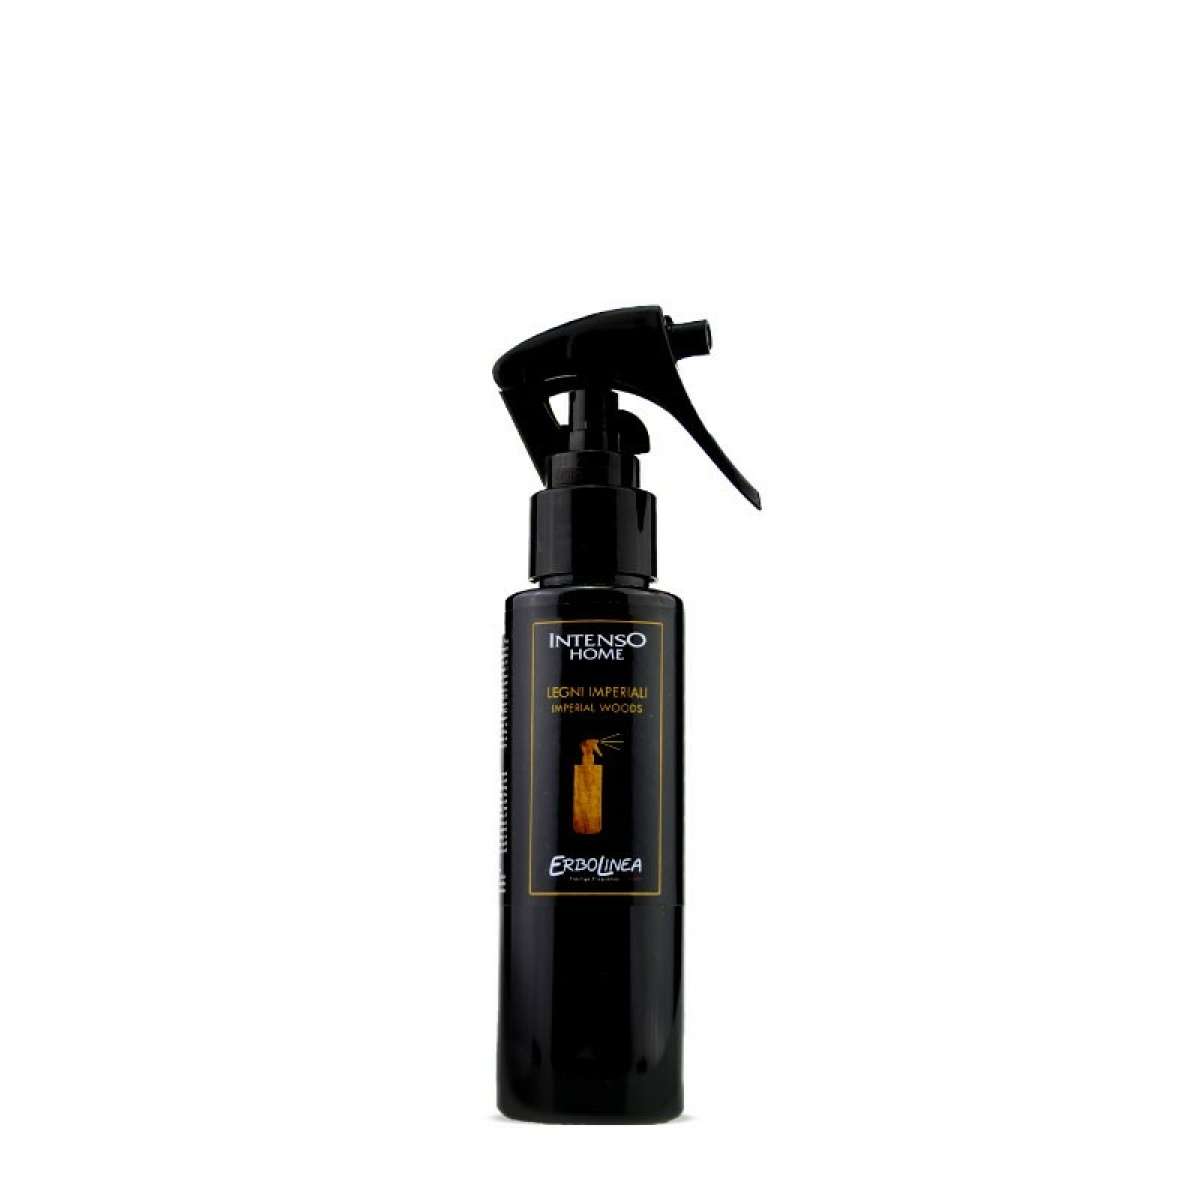 Immagine del prodotto Home Spray per Ambiente Legni Imperiali 100 ml | Erbolinea Prestige